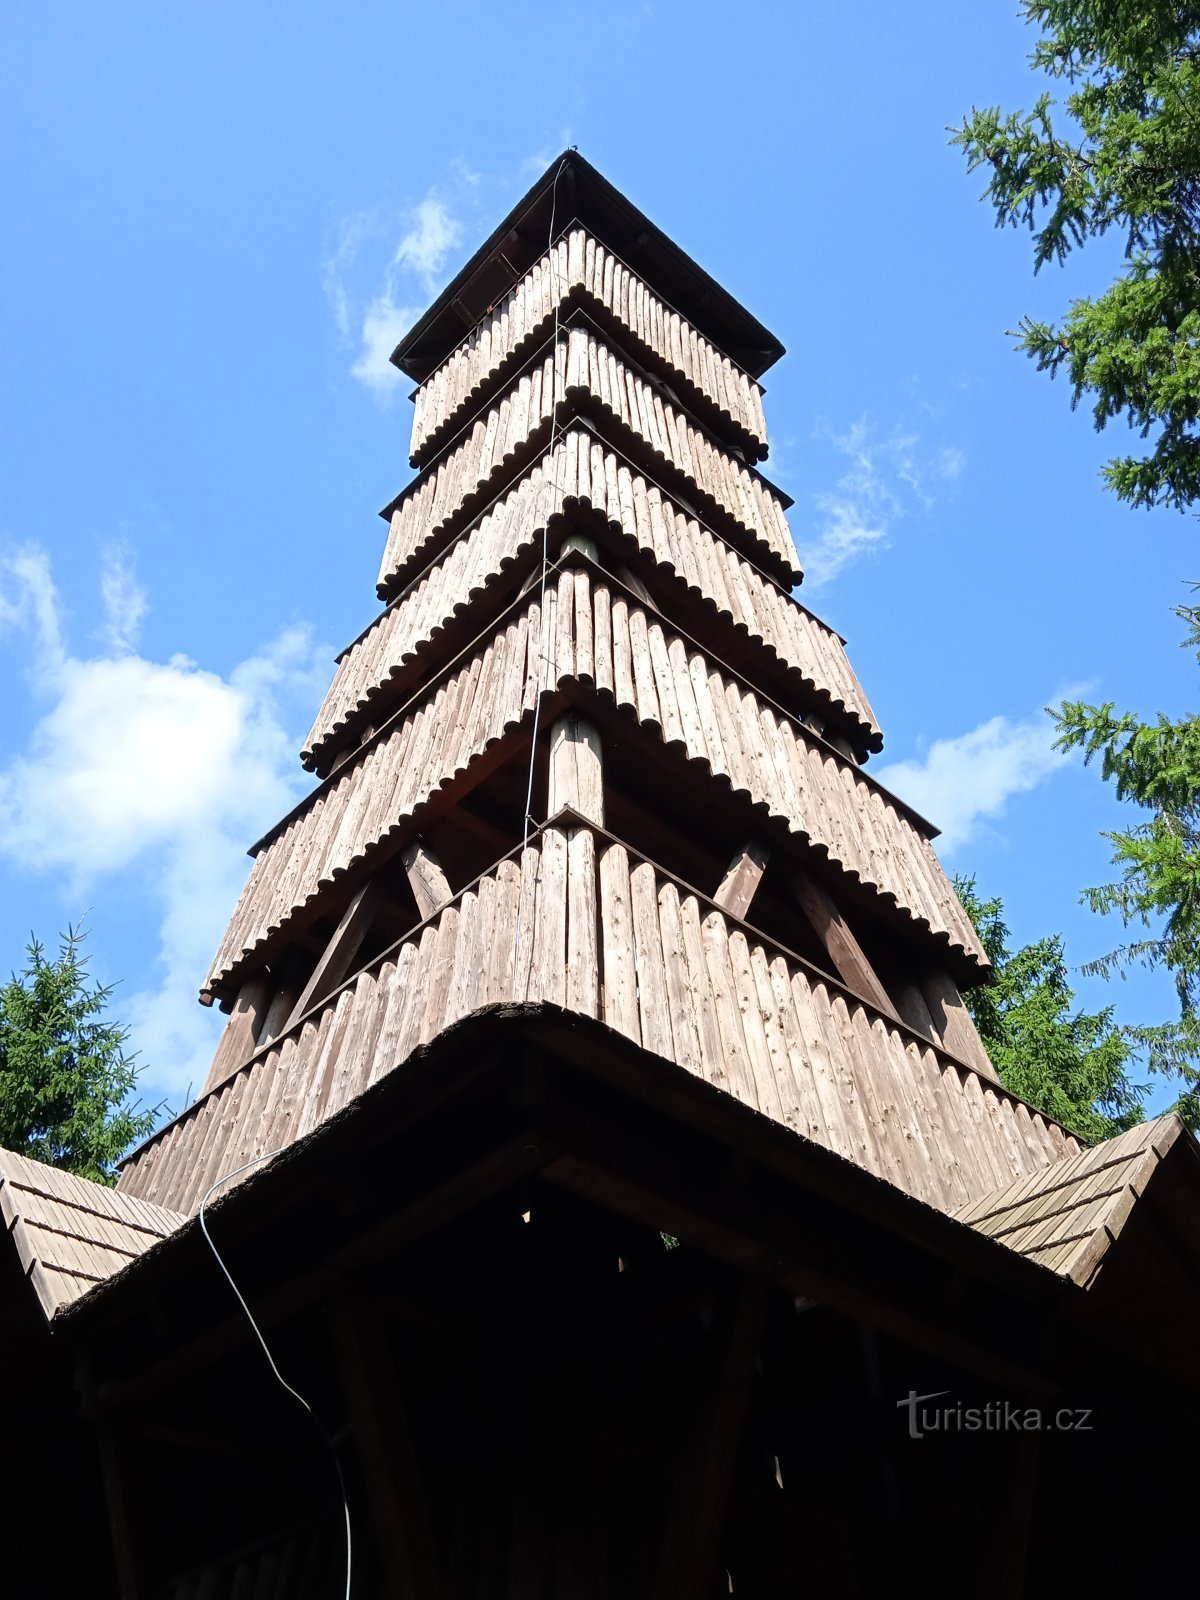 Torre mirador Královec-Valašské Klobouky